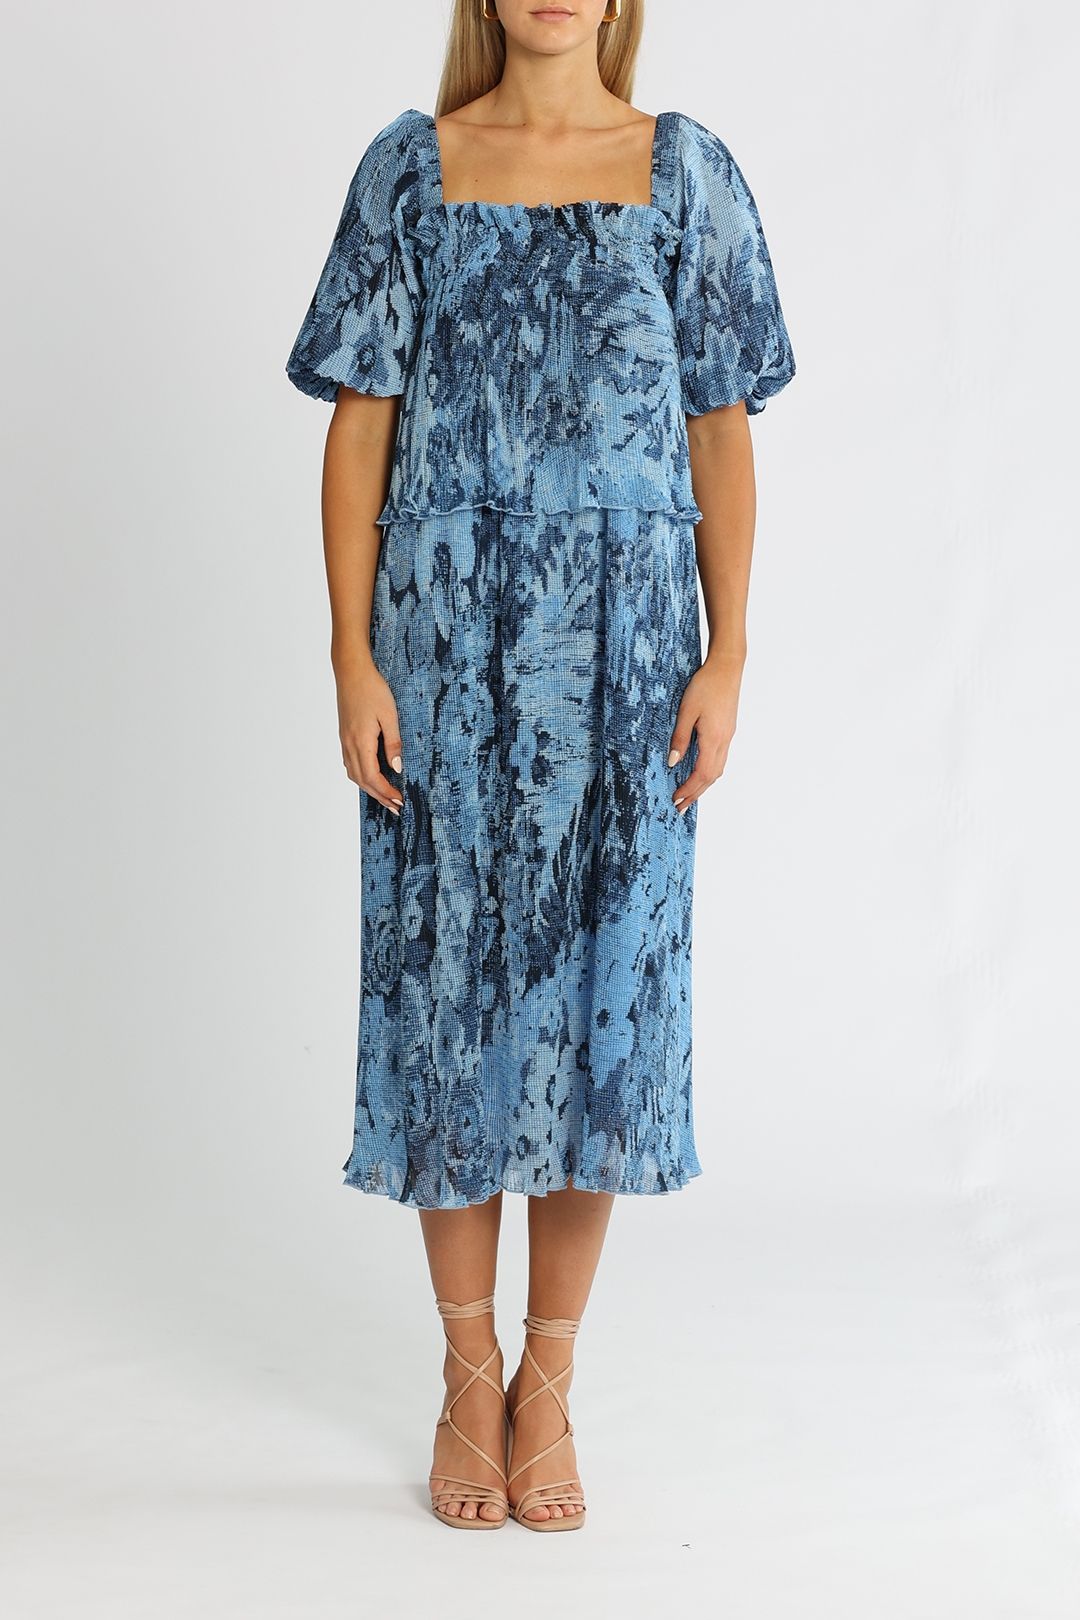 Ganni Placid Blue Midi Dress